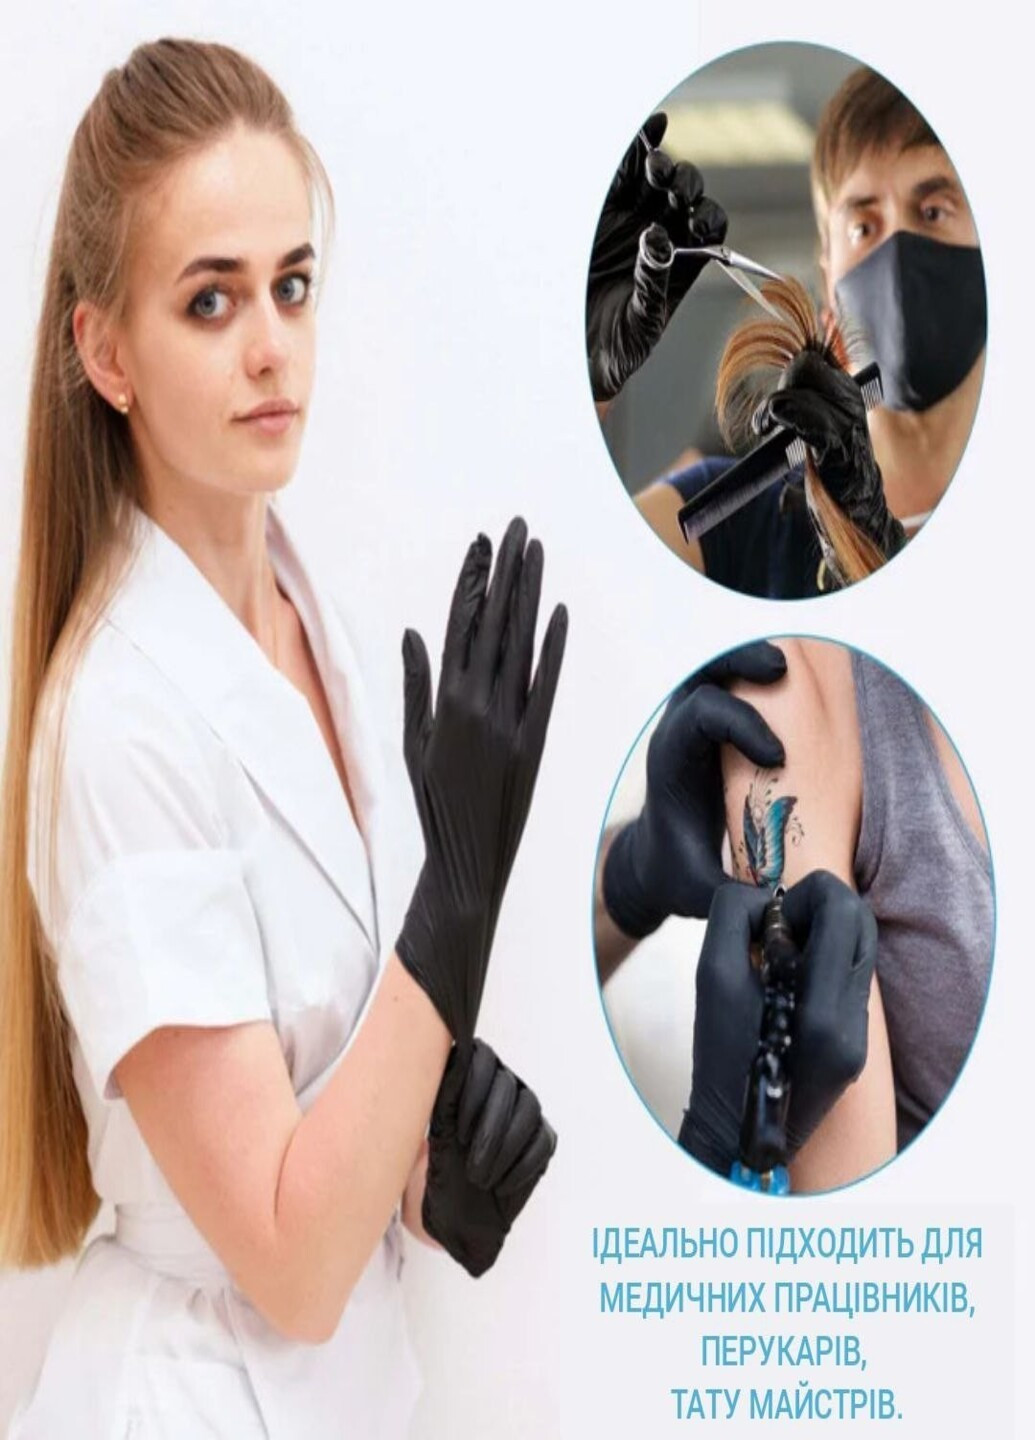 Нитриловые перчатки Advanced Black без пудры текстурированные M 100 шт. Черные (3.3 г) Medicom (254181102)